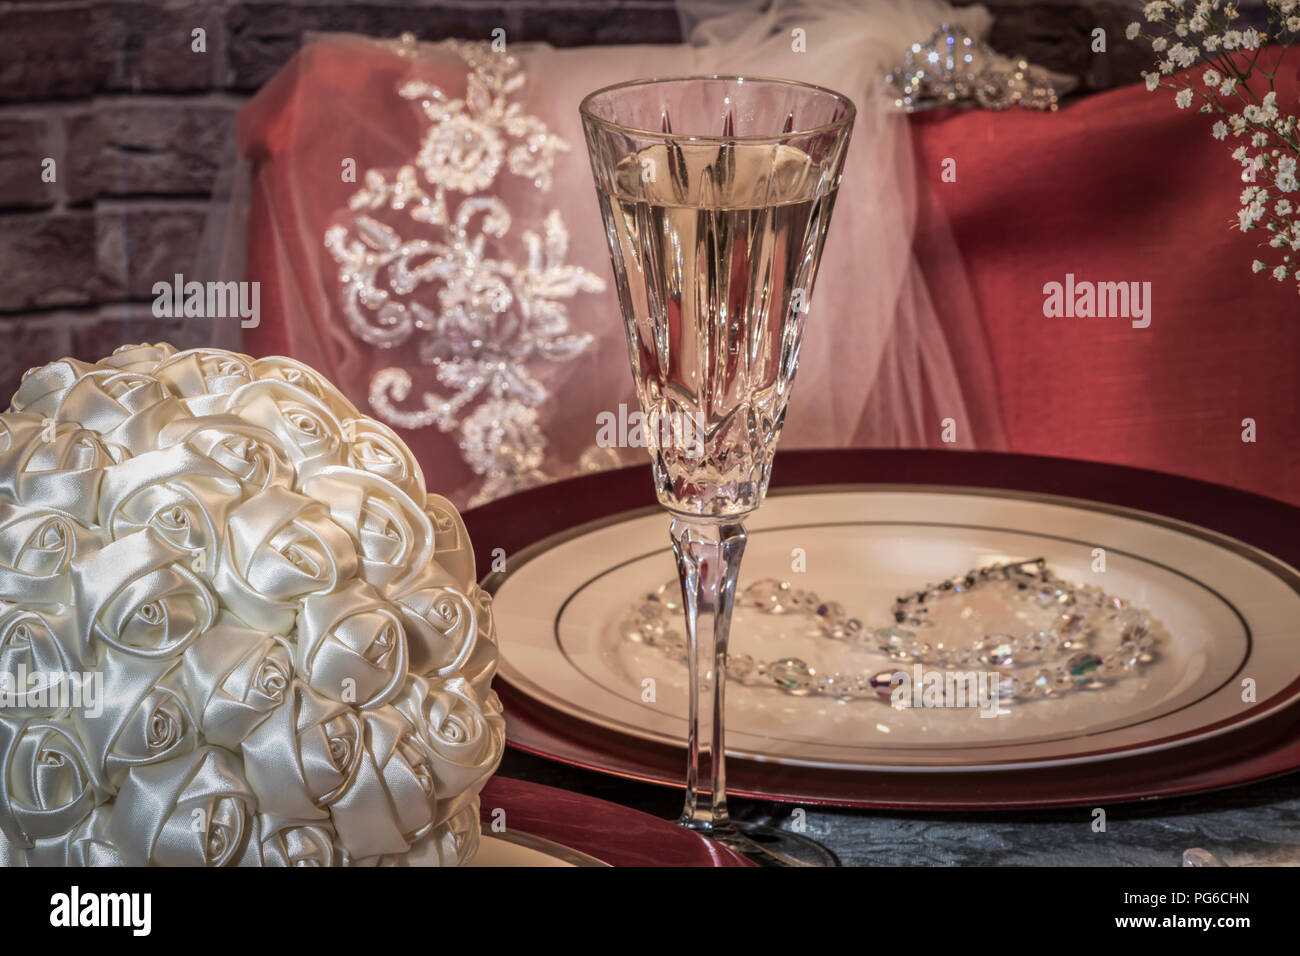 Au siège de la mariée bouquet nuptiale avec table, voile, collier et champagne Banque D'Images